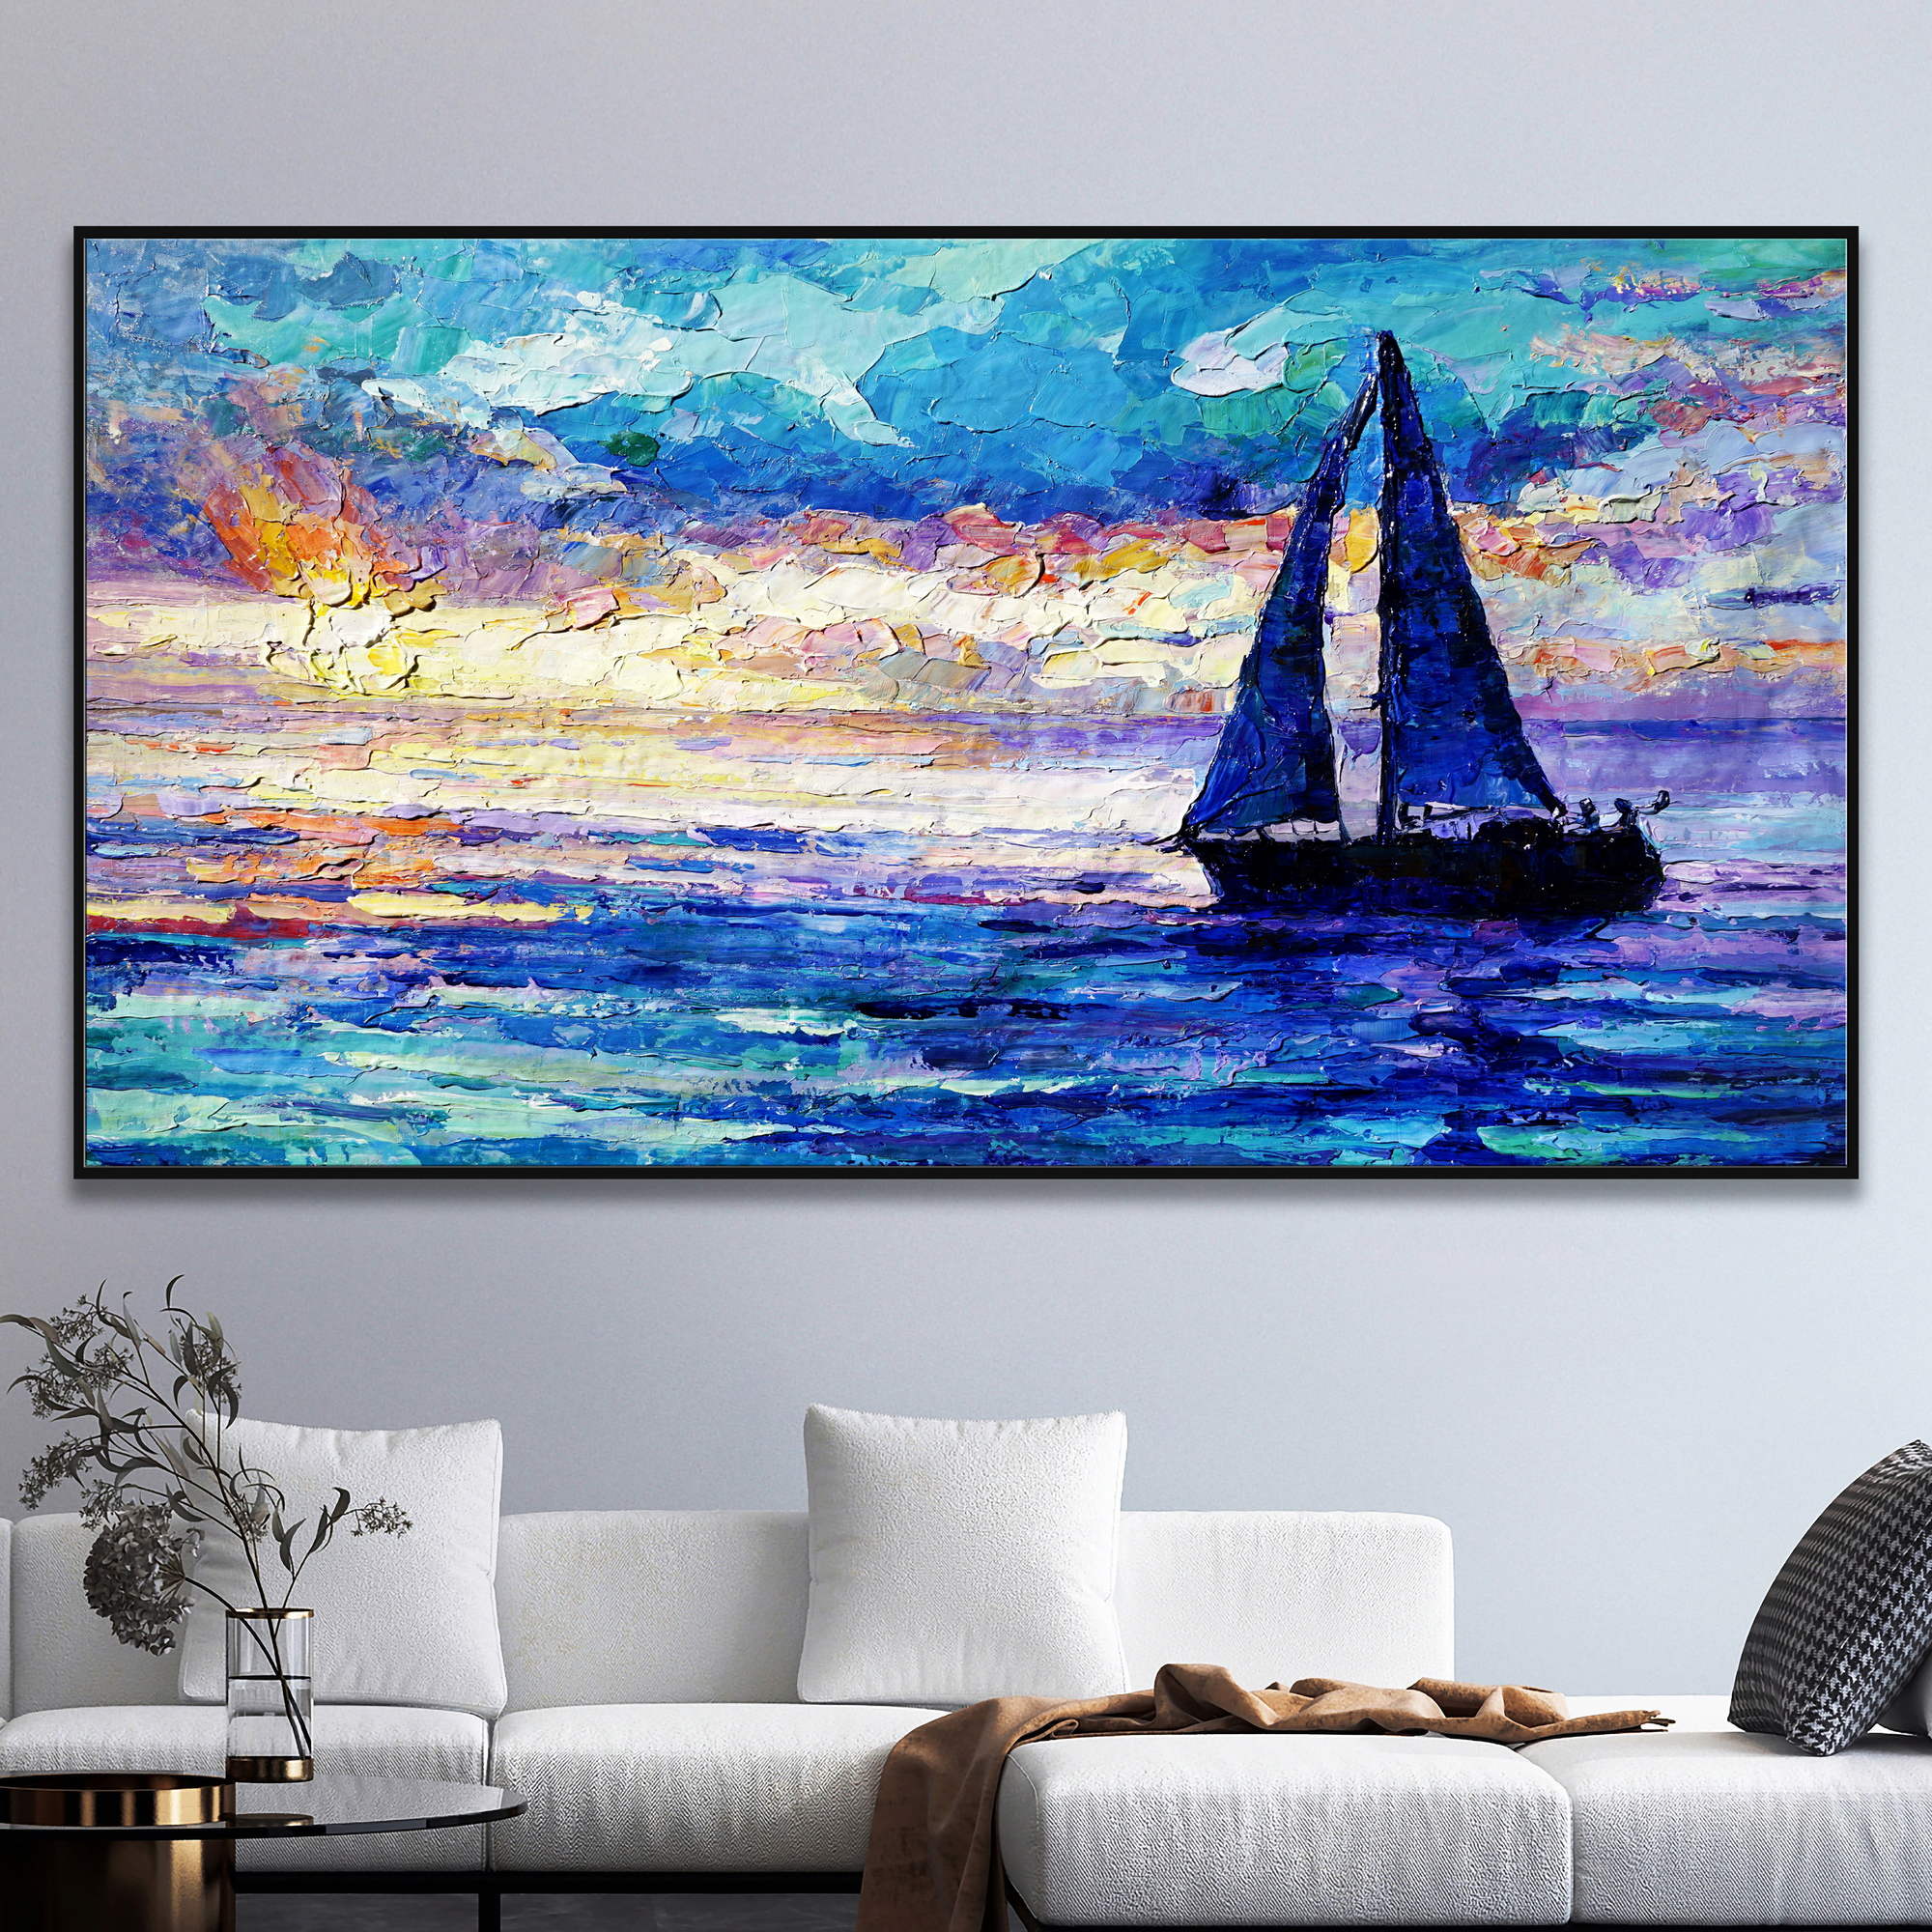 Dipinto di una barca a vela su mare al tramonto con cielo colorato